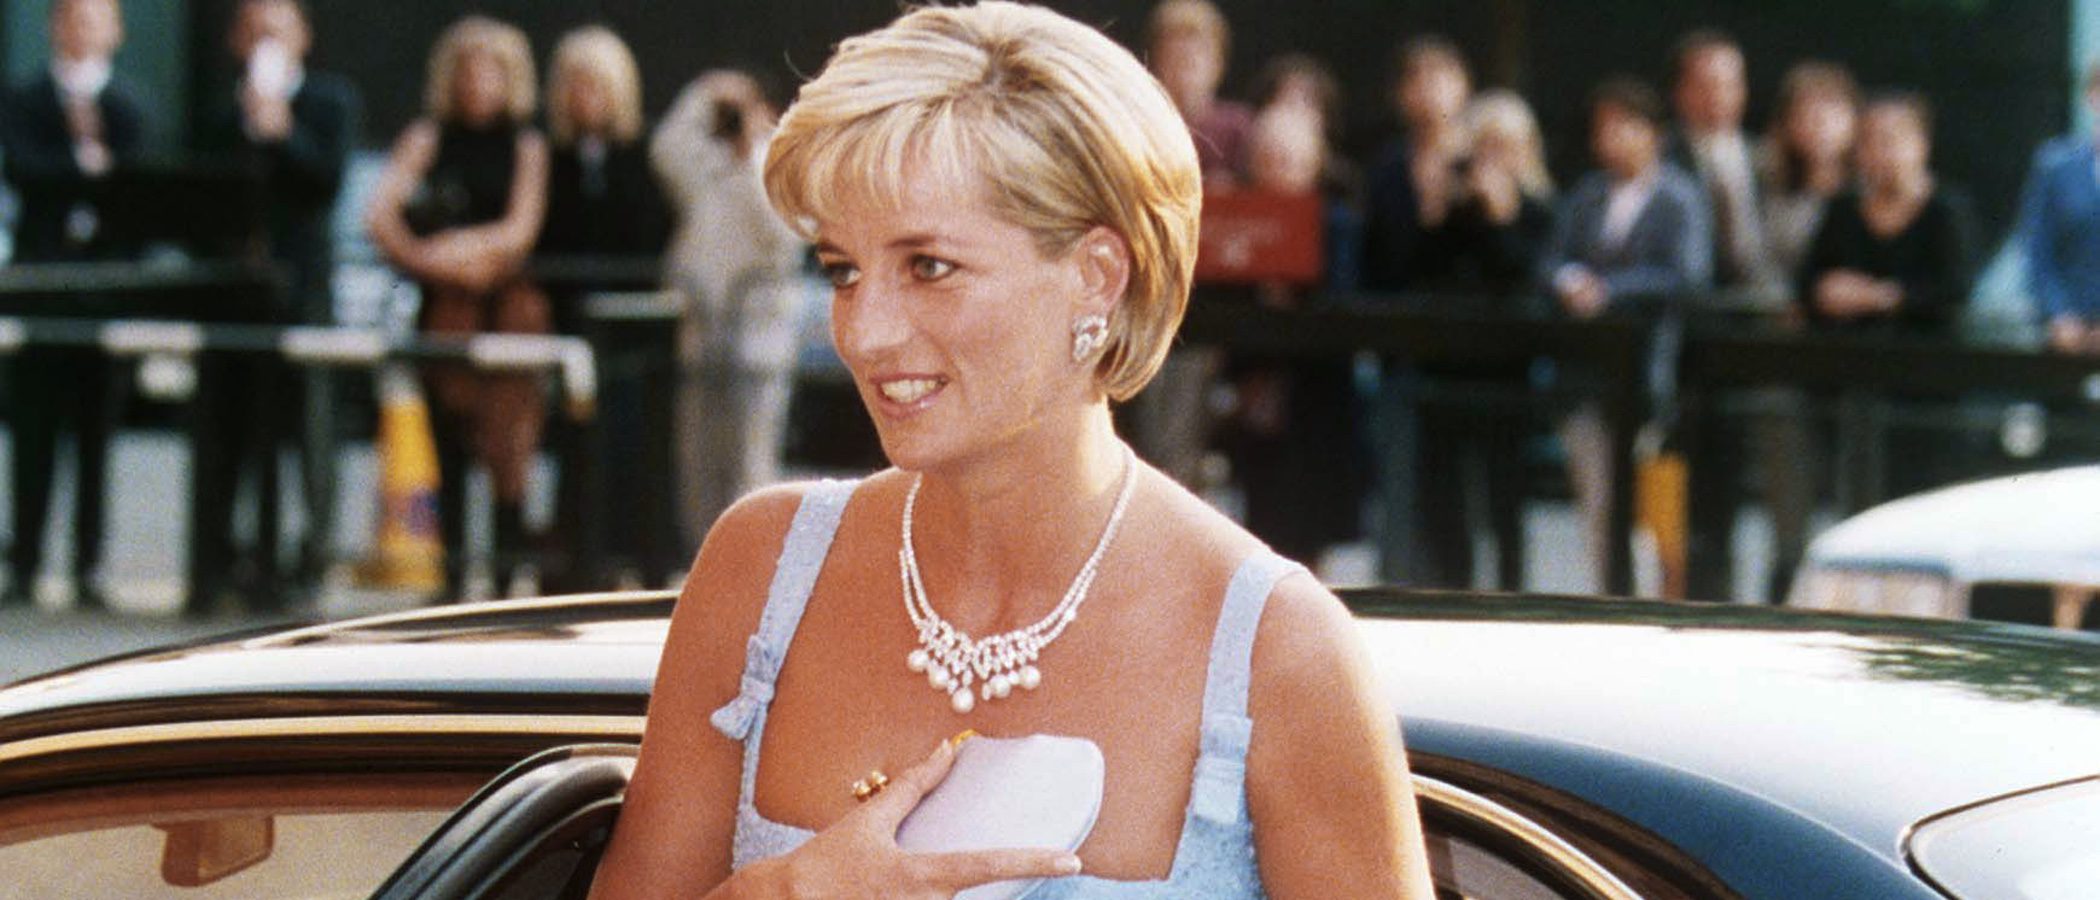 Se pone en venta 'El lago de los cisnes' de la Princesa Diana, uno de los collares más icónicos de la historia